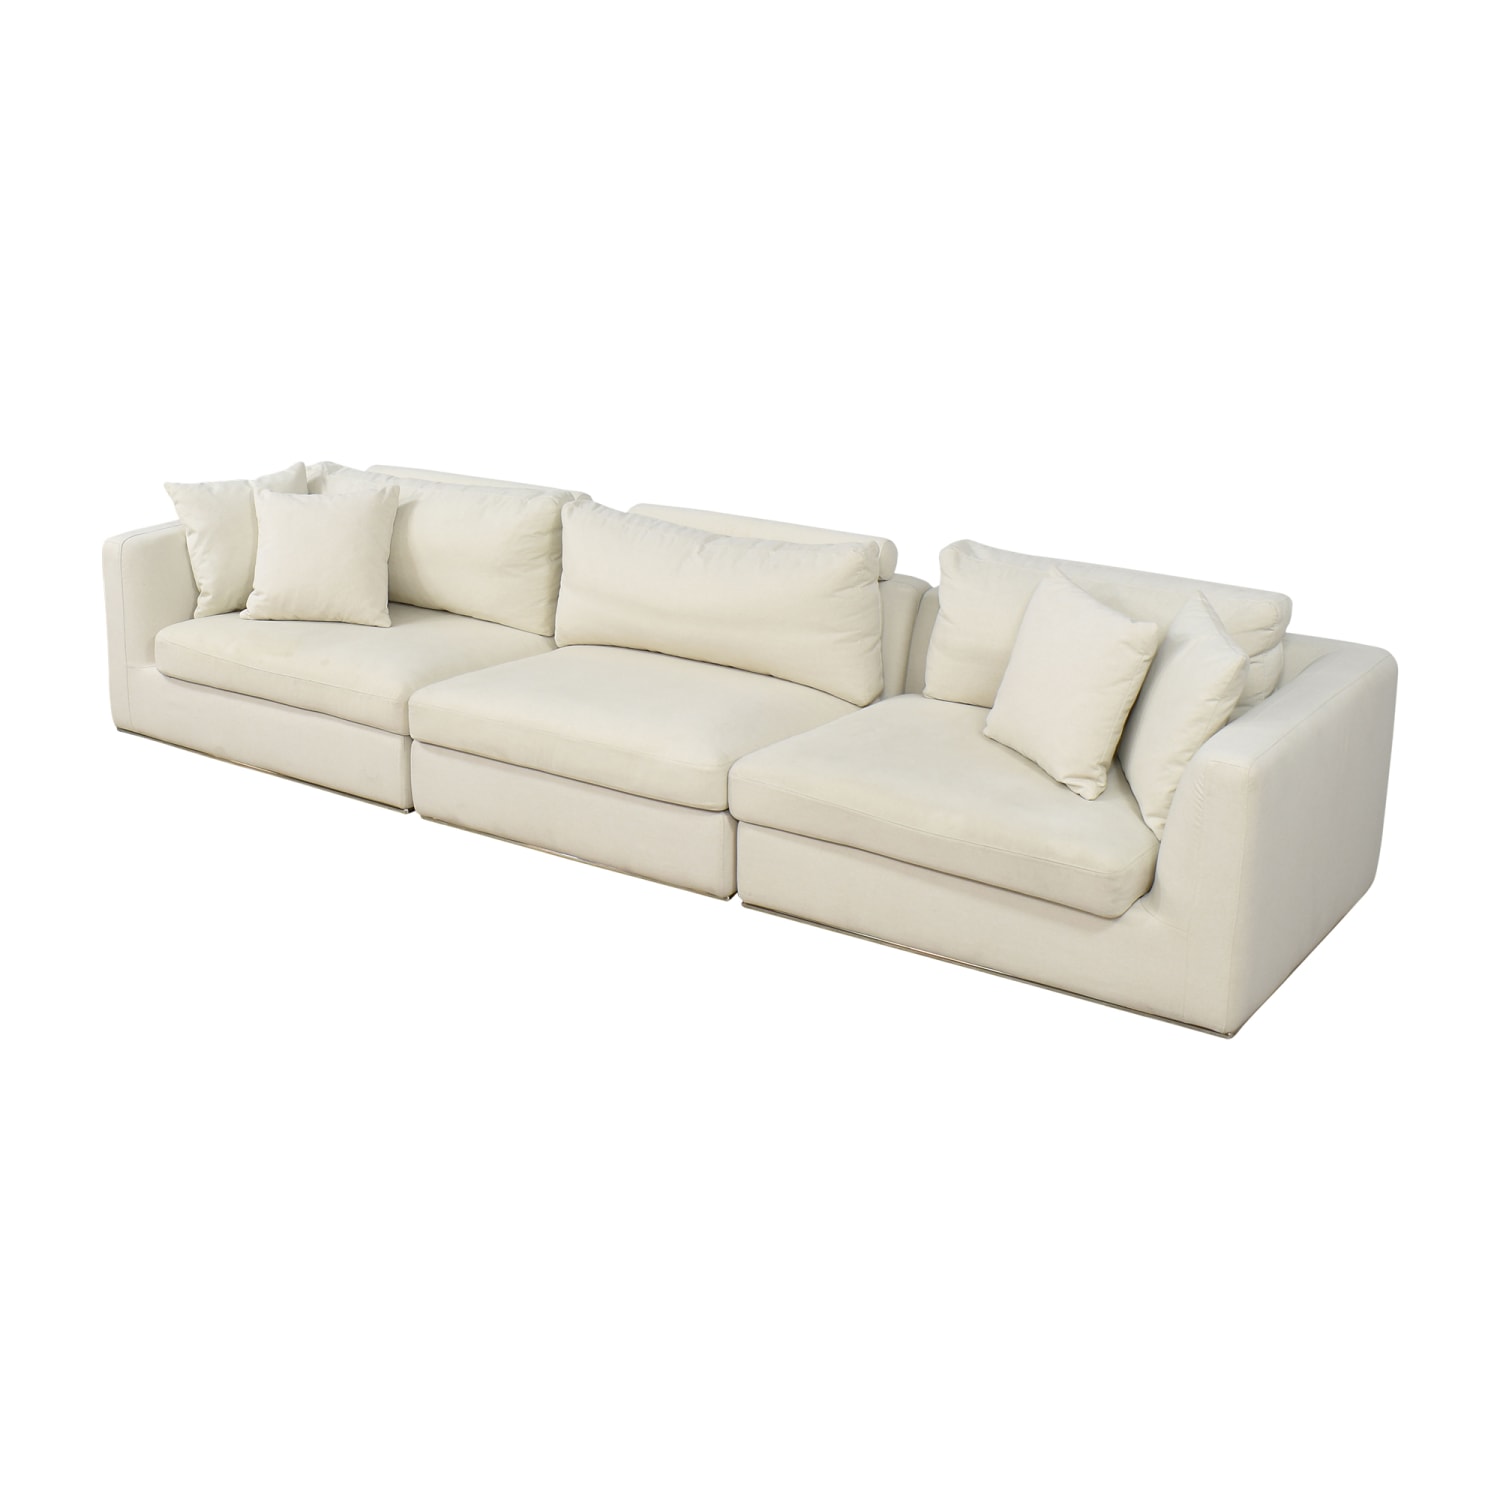 Rove Concepts Milo Modular Sectional Sofa | 75% Off | Kaiyo